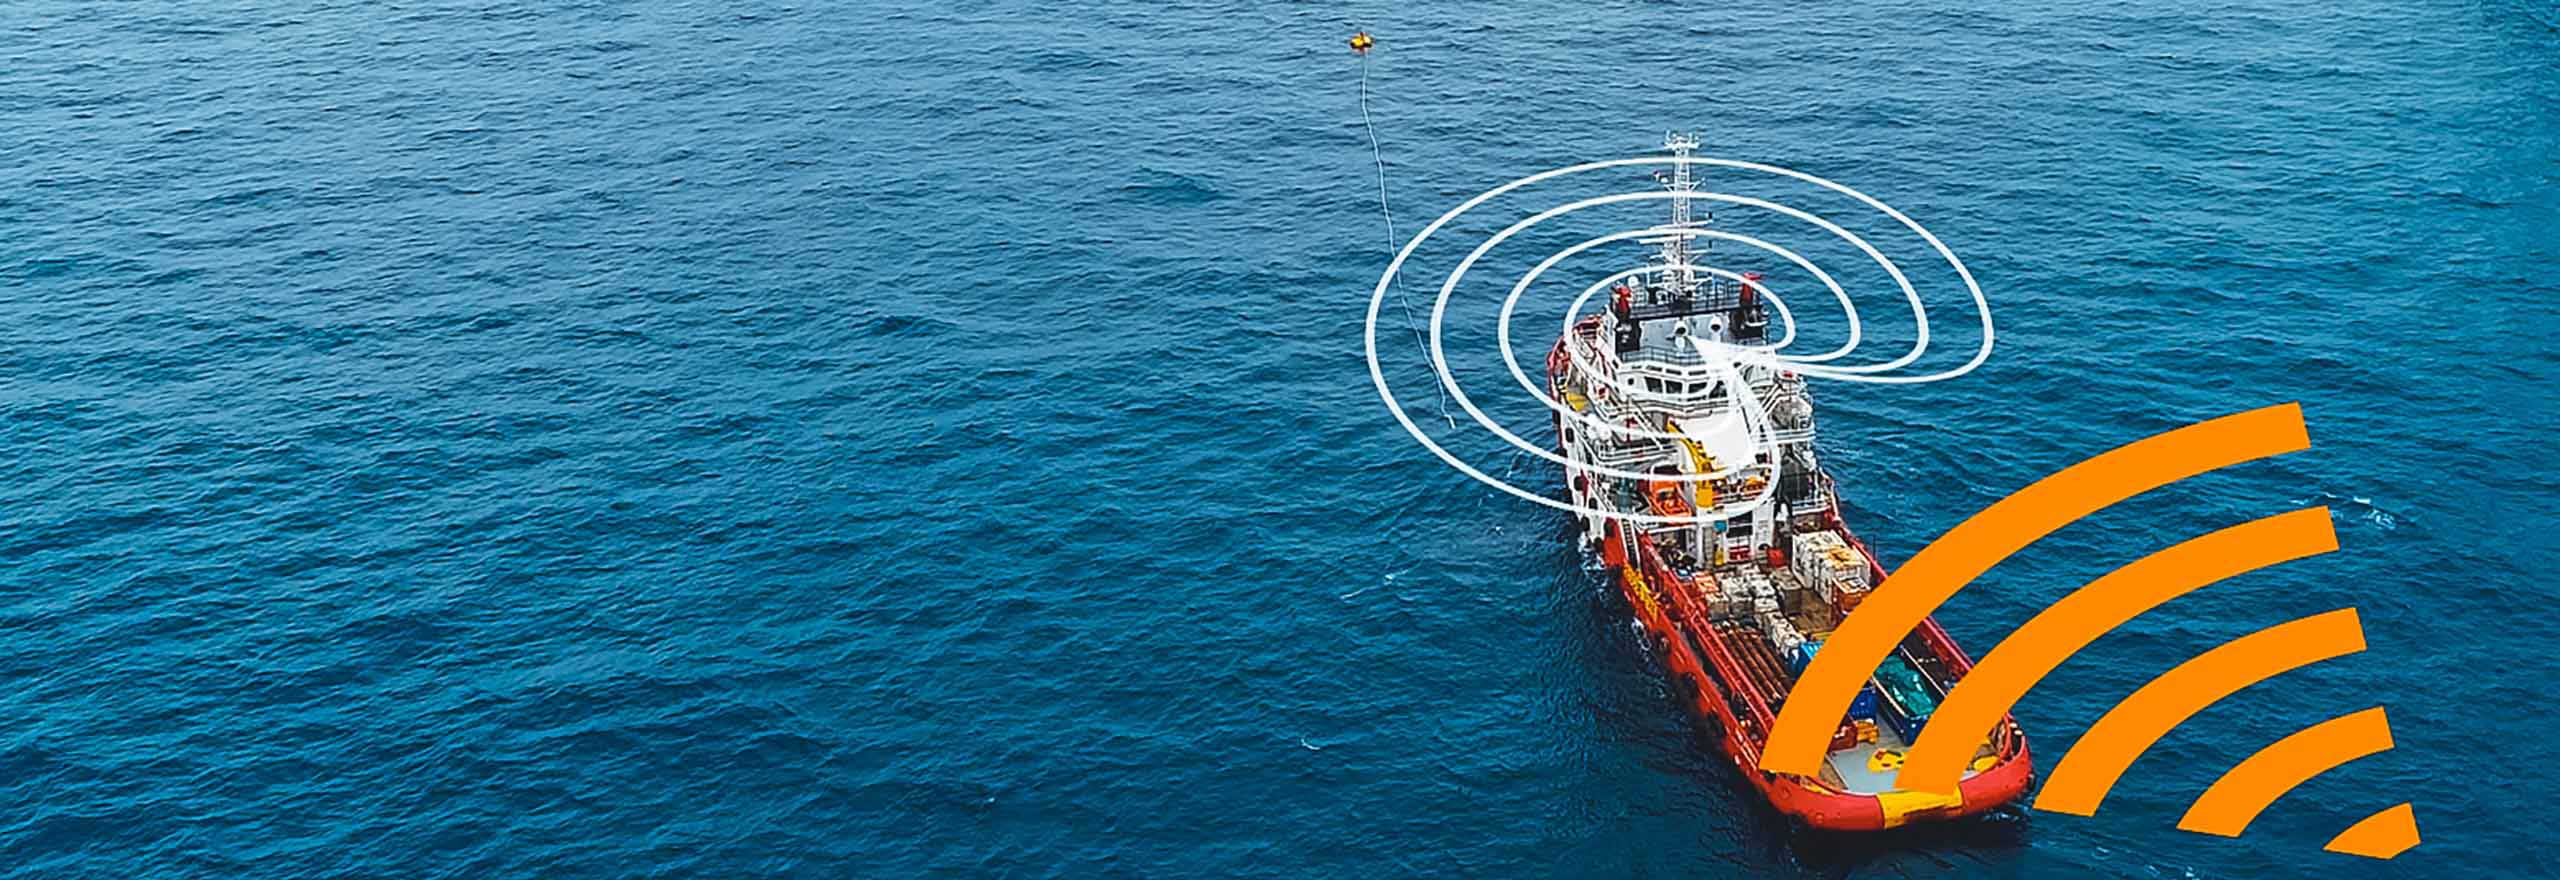 Cómo la tecnología antiatascos reacciona y mitiga los atascos en un buque rojo y blanco en medio del océano, cerca de una plataforma petrolífera en alta mar.